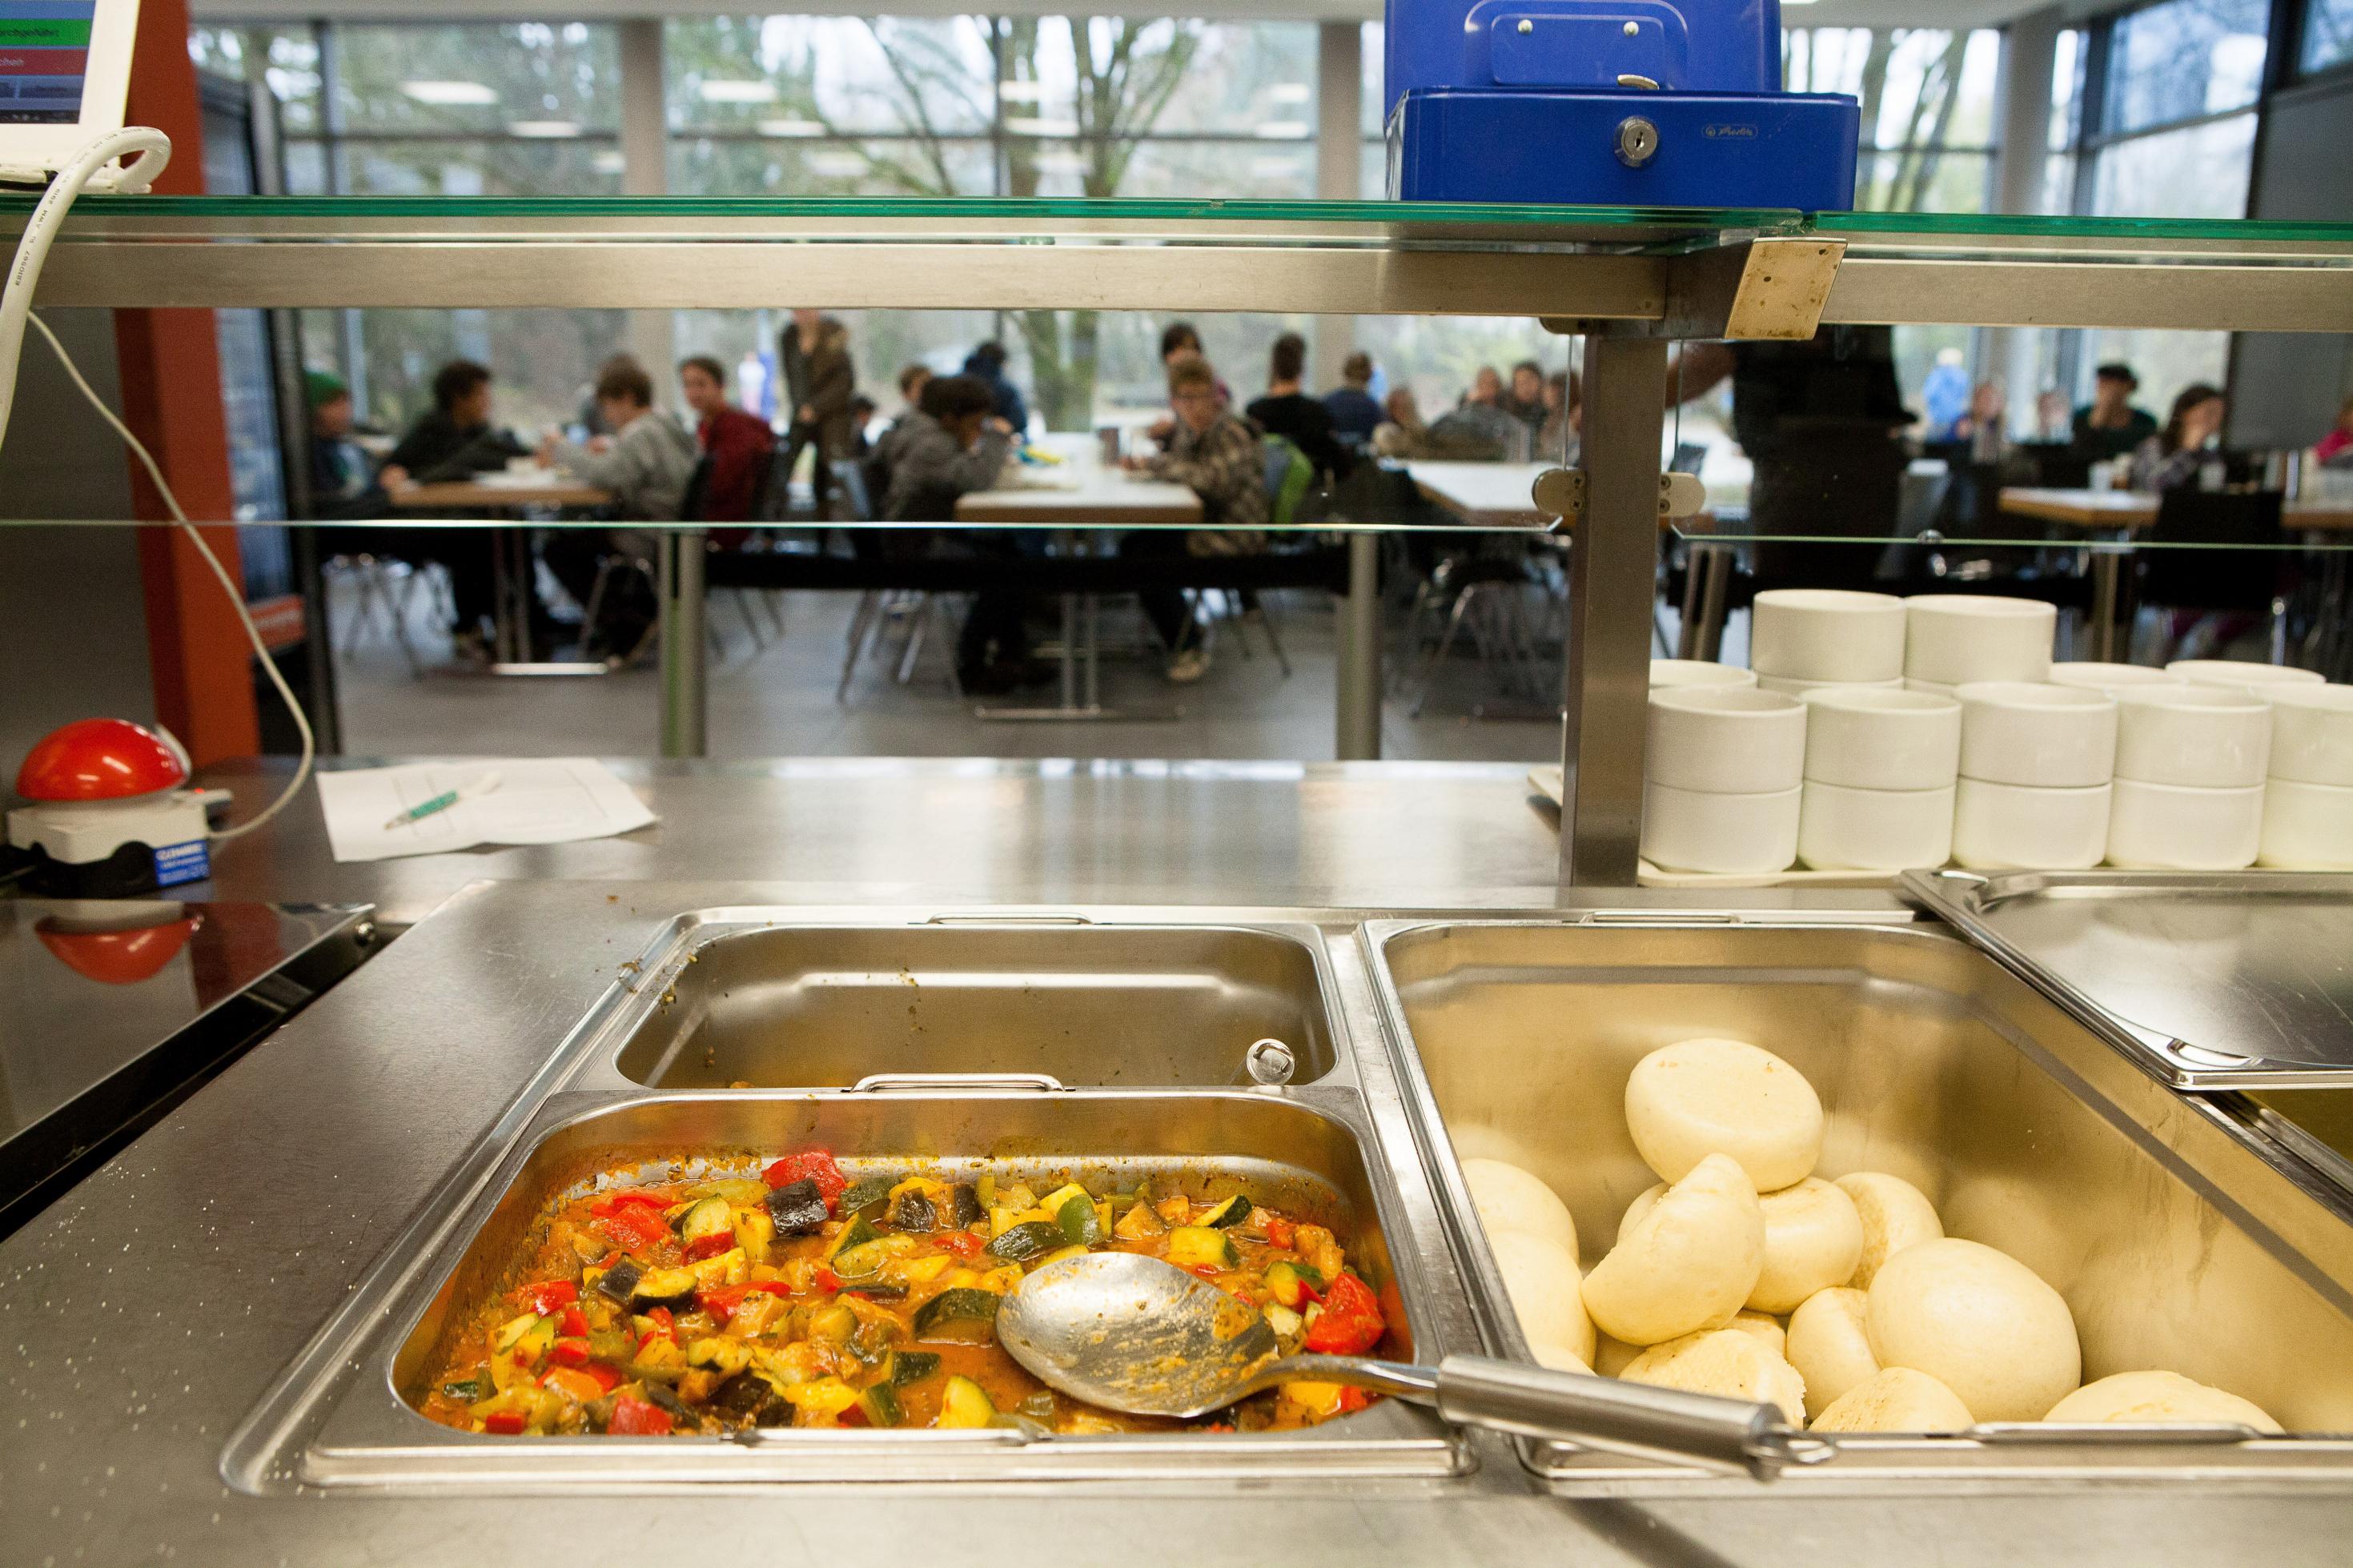 Die Essenausgabe einer Schulmensa. Im Vordergrund sieht man Ratatouille und Knödel in Edelstahlbehältern, im Hintergrund Kinder beim Mittagessen an langen Tischen.